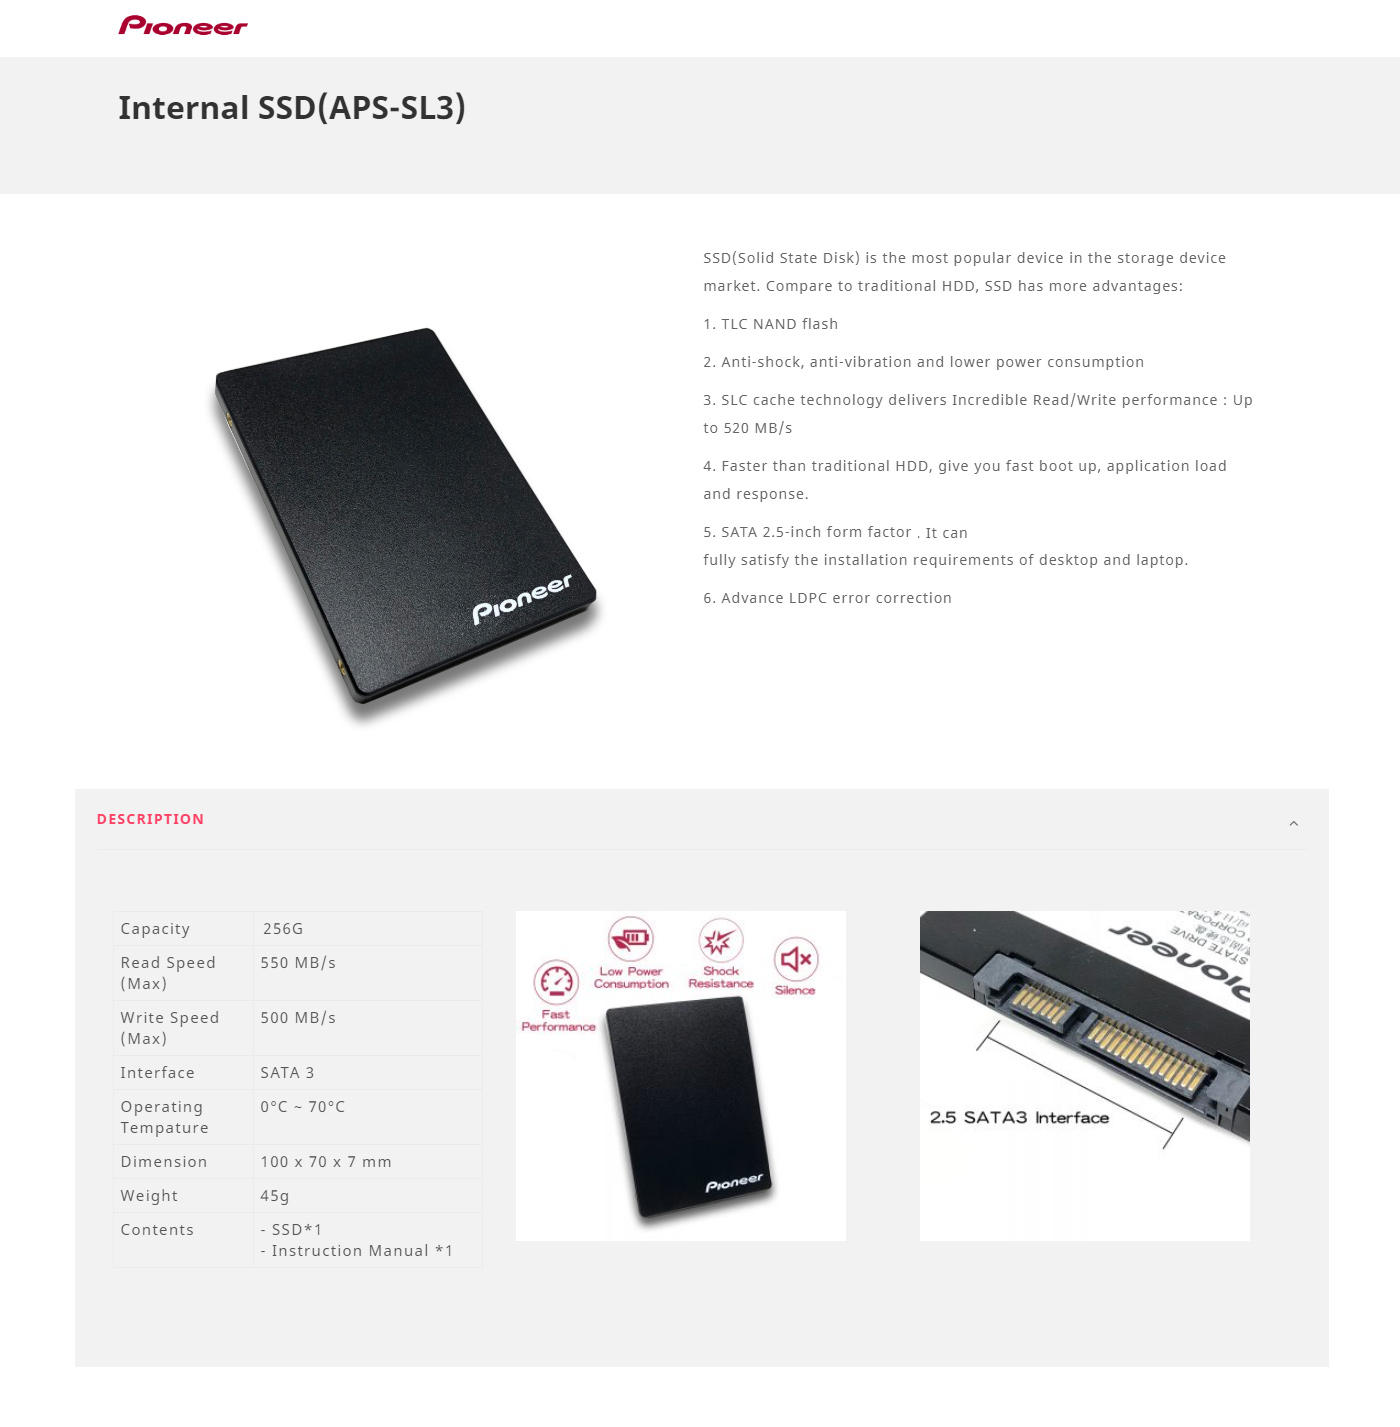 Buy Online Pioneer 256GB SATA Internal Solid State Drive (APS-SL3N-256)